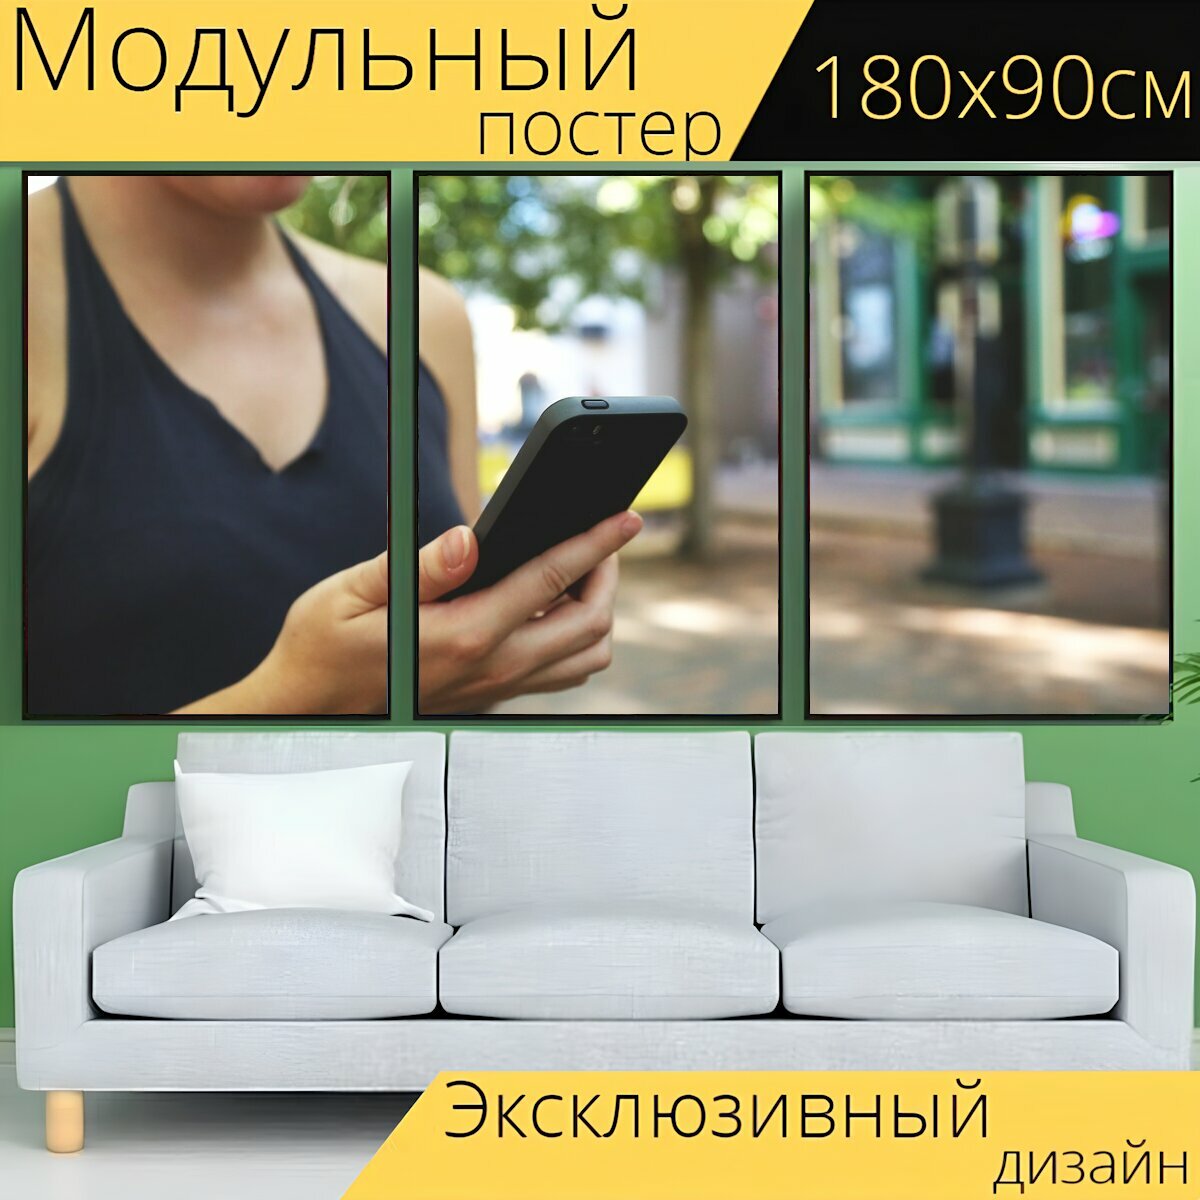 Модульный постер "Смартфон, телефон, мобильный" 180 x 90 см. для интерьера